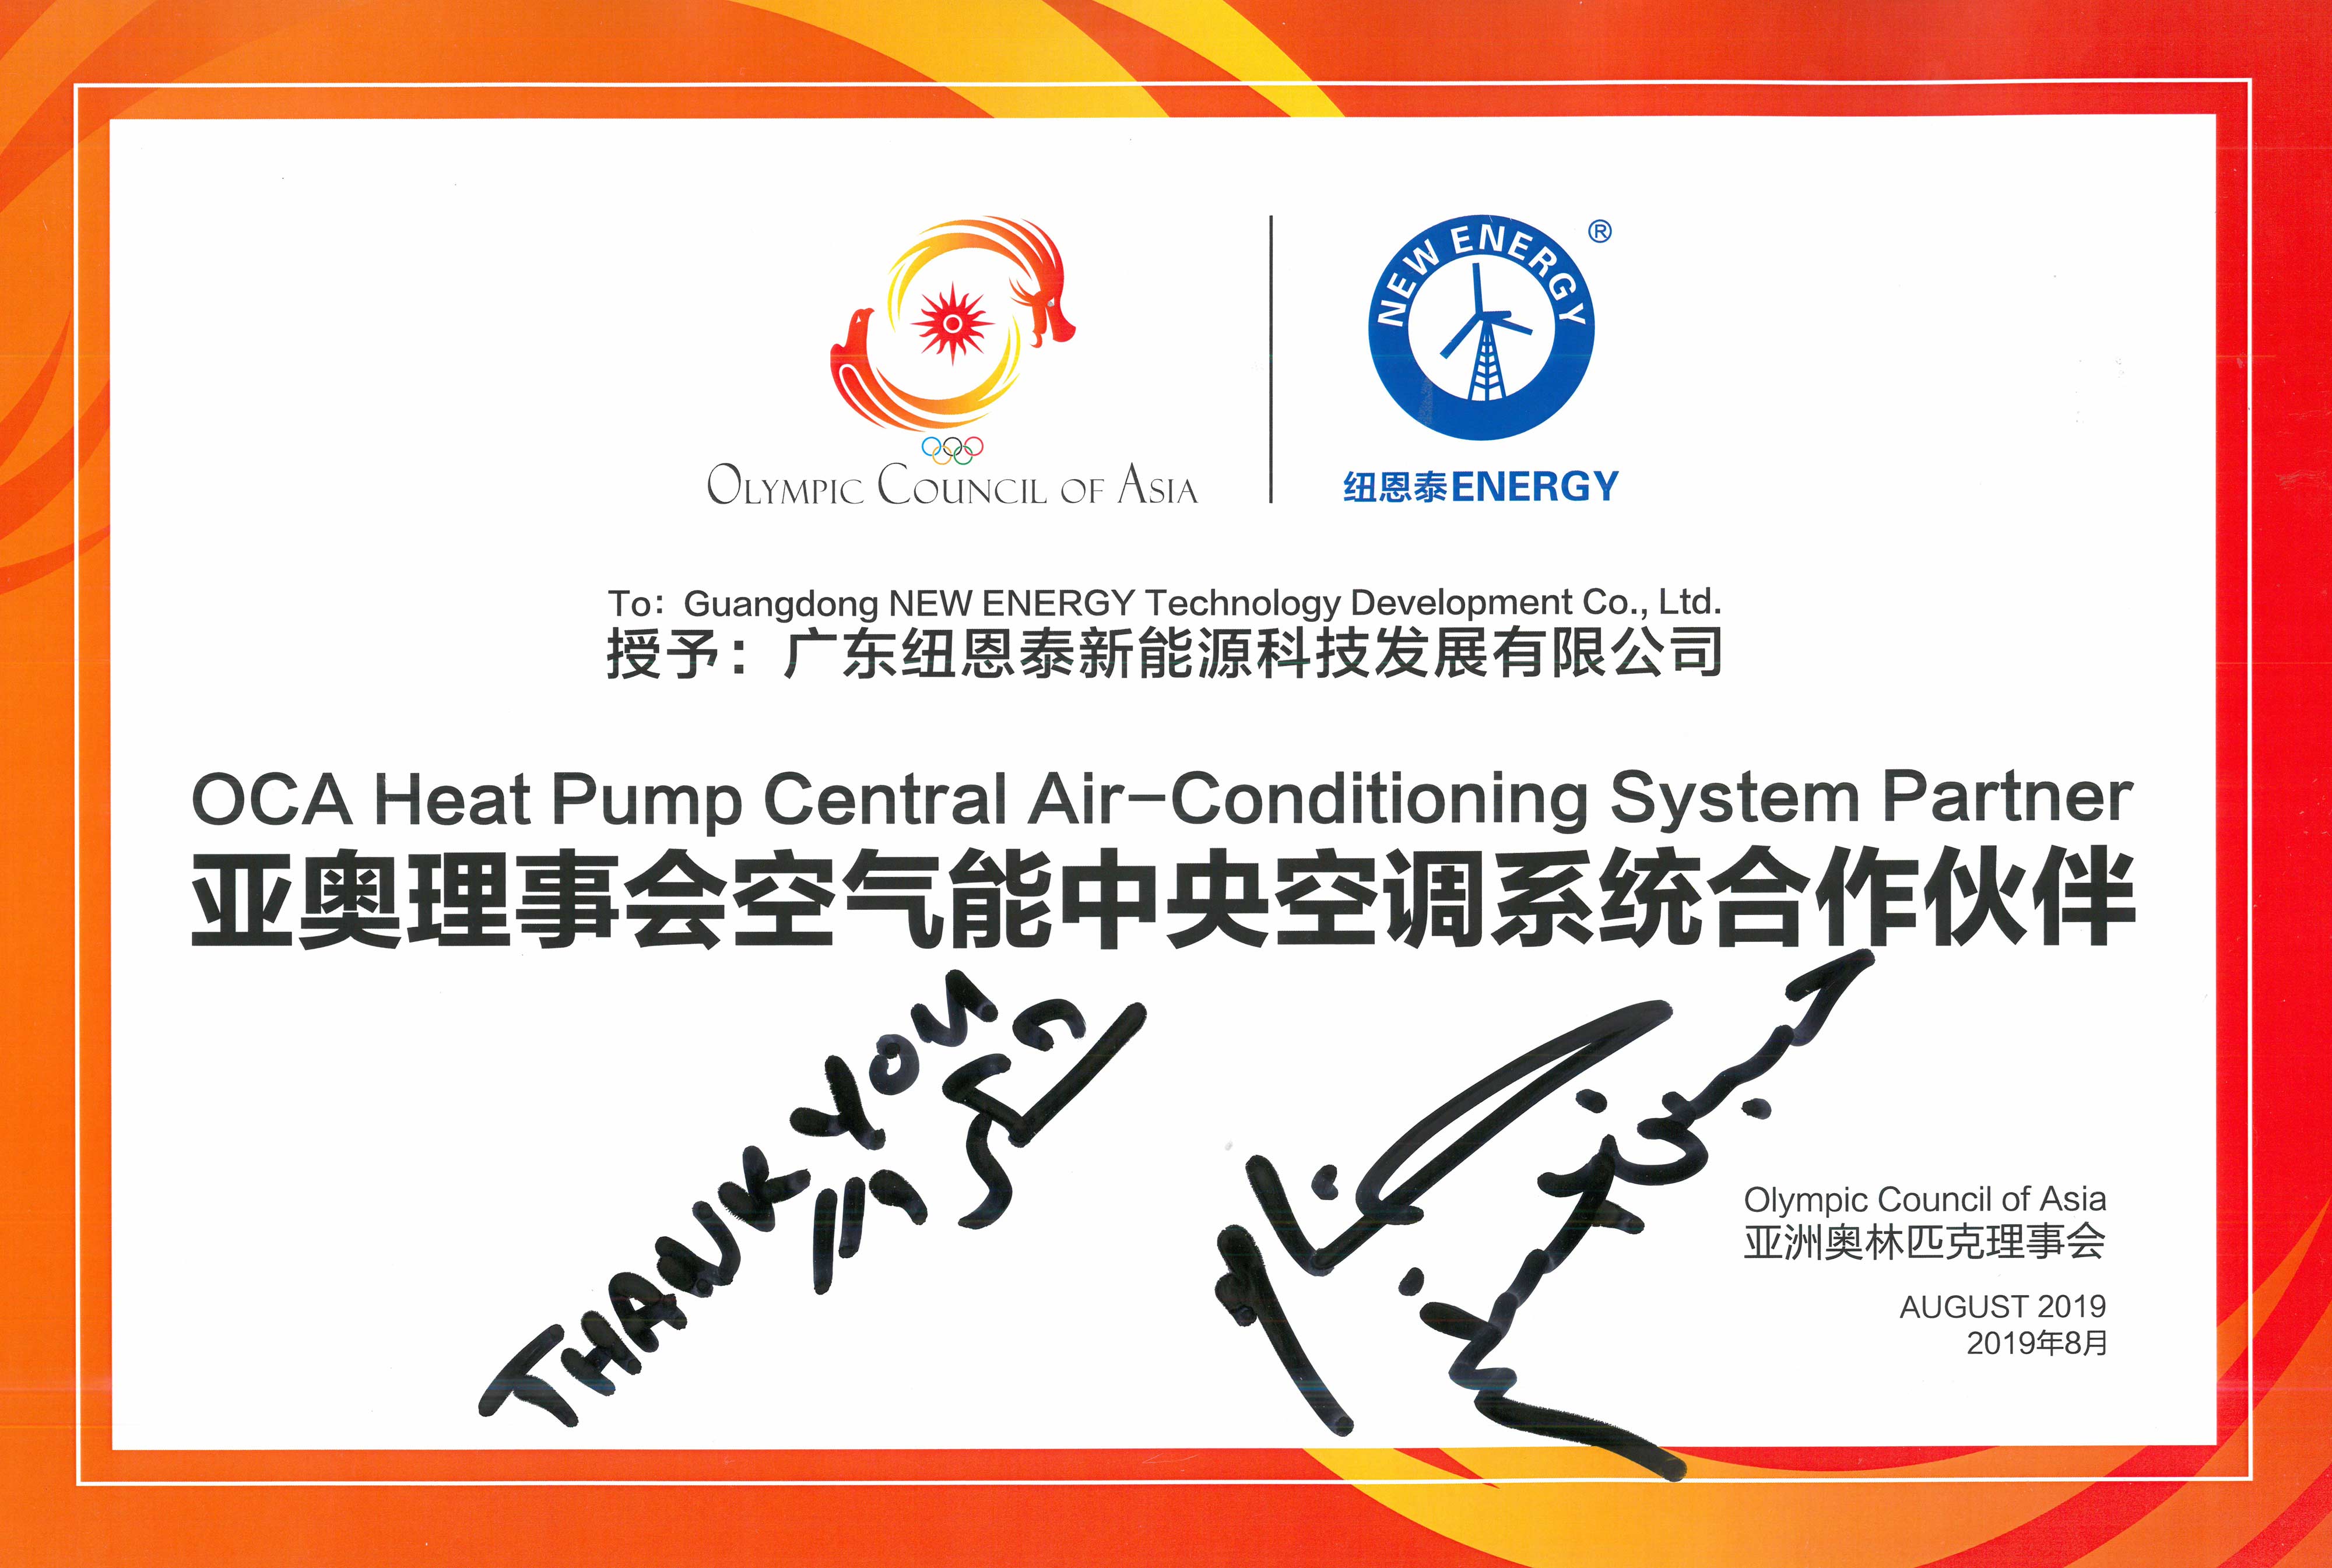 空气能中央空调系统合作伙伴